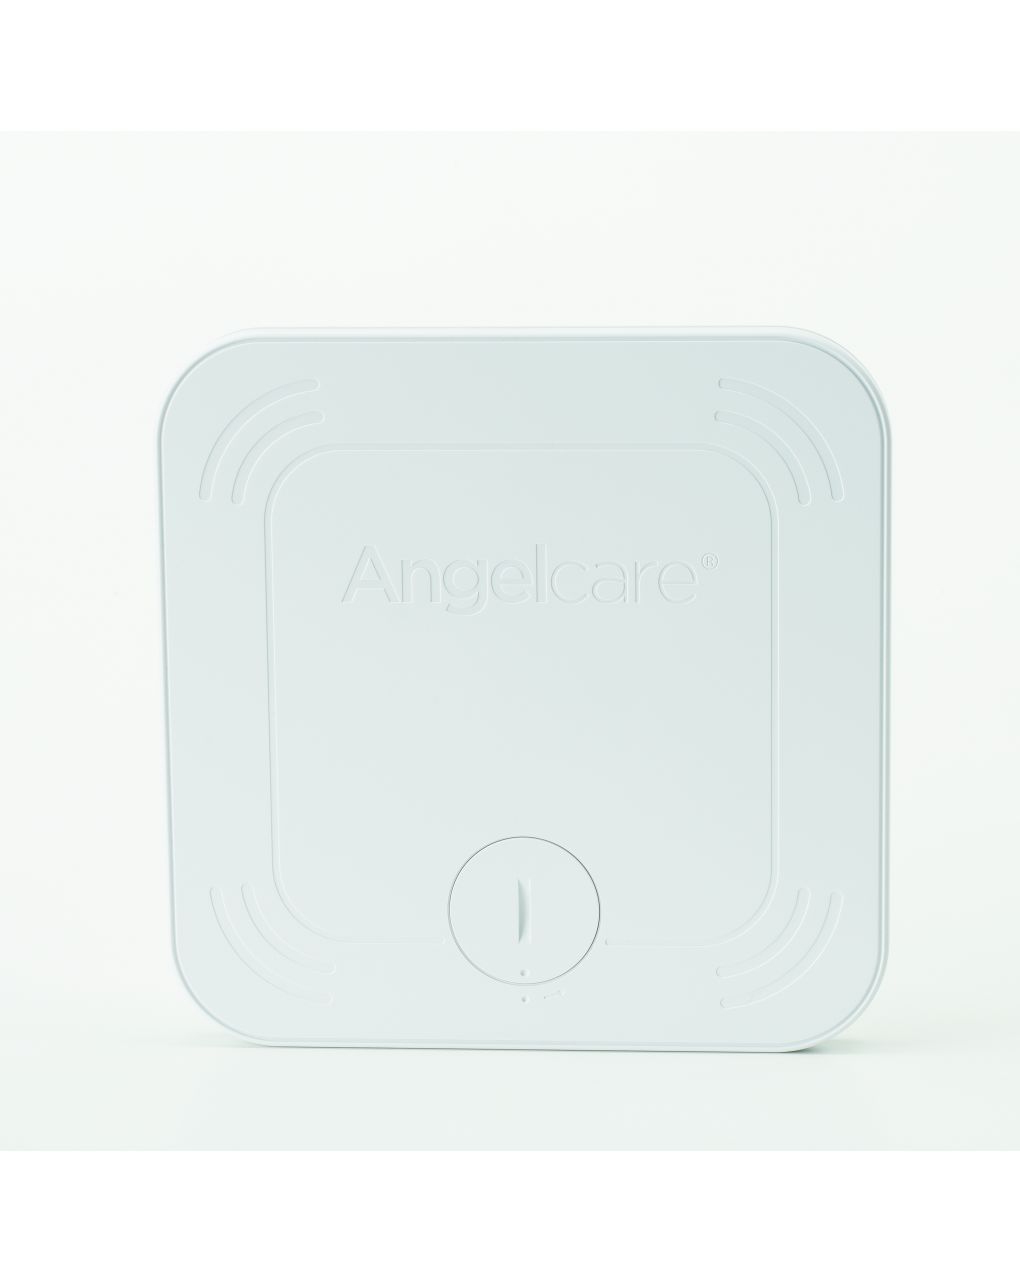 Angelcare - audio video monitor digitalecon pannello sensore wireless - Foppapedretti